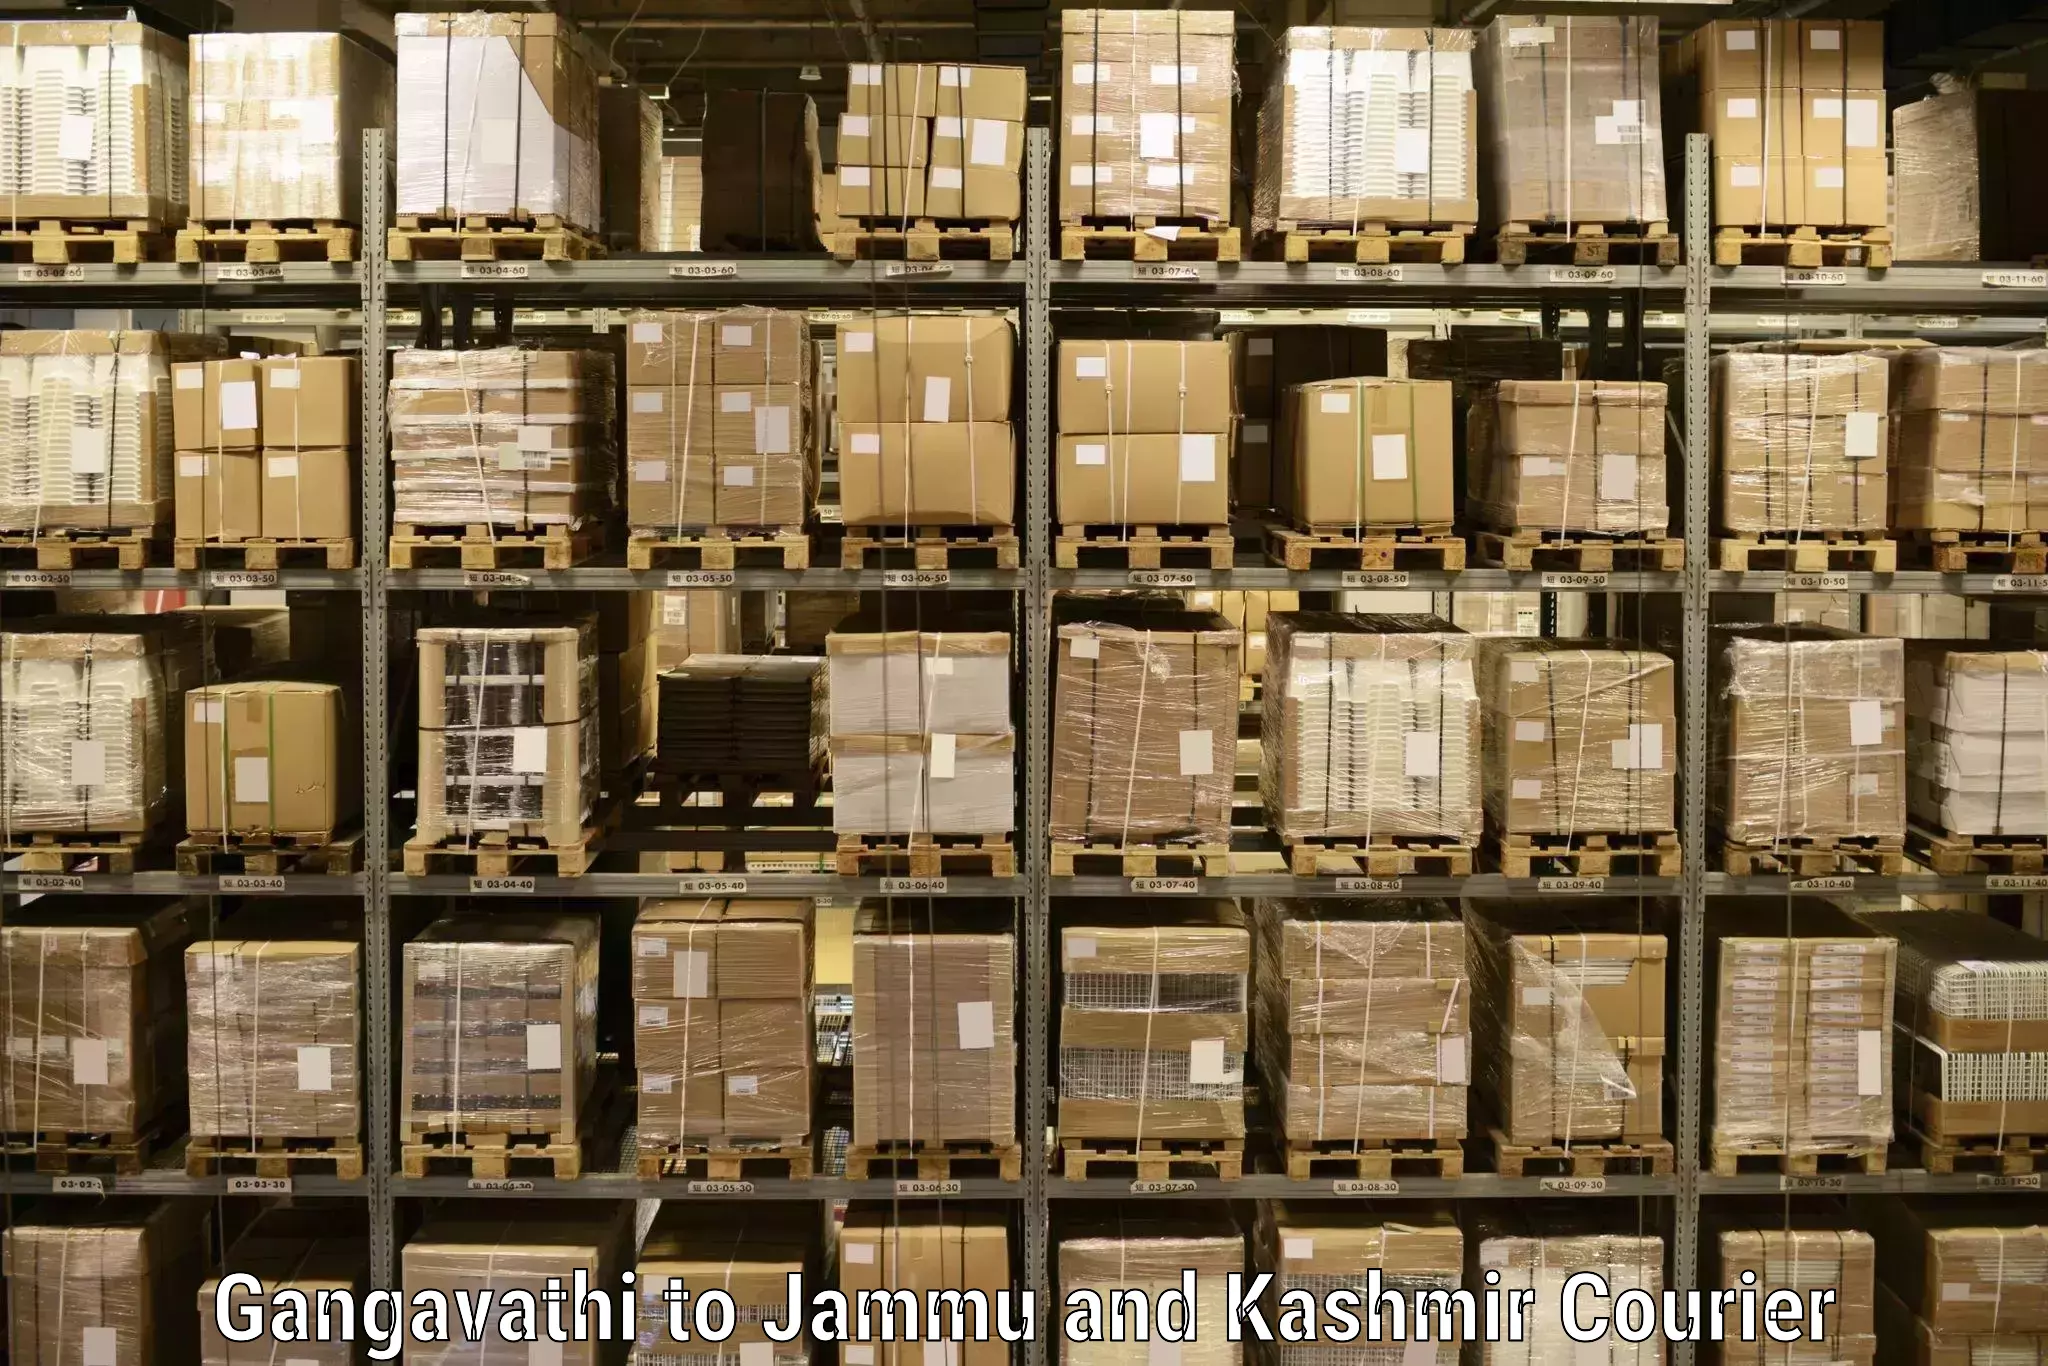 Next-day delivery options Gangavathi to IIT Jammu